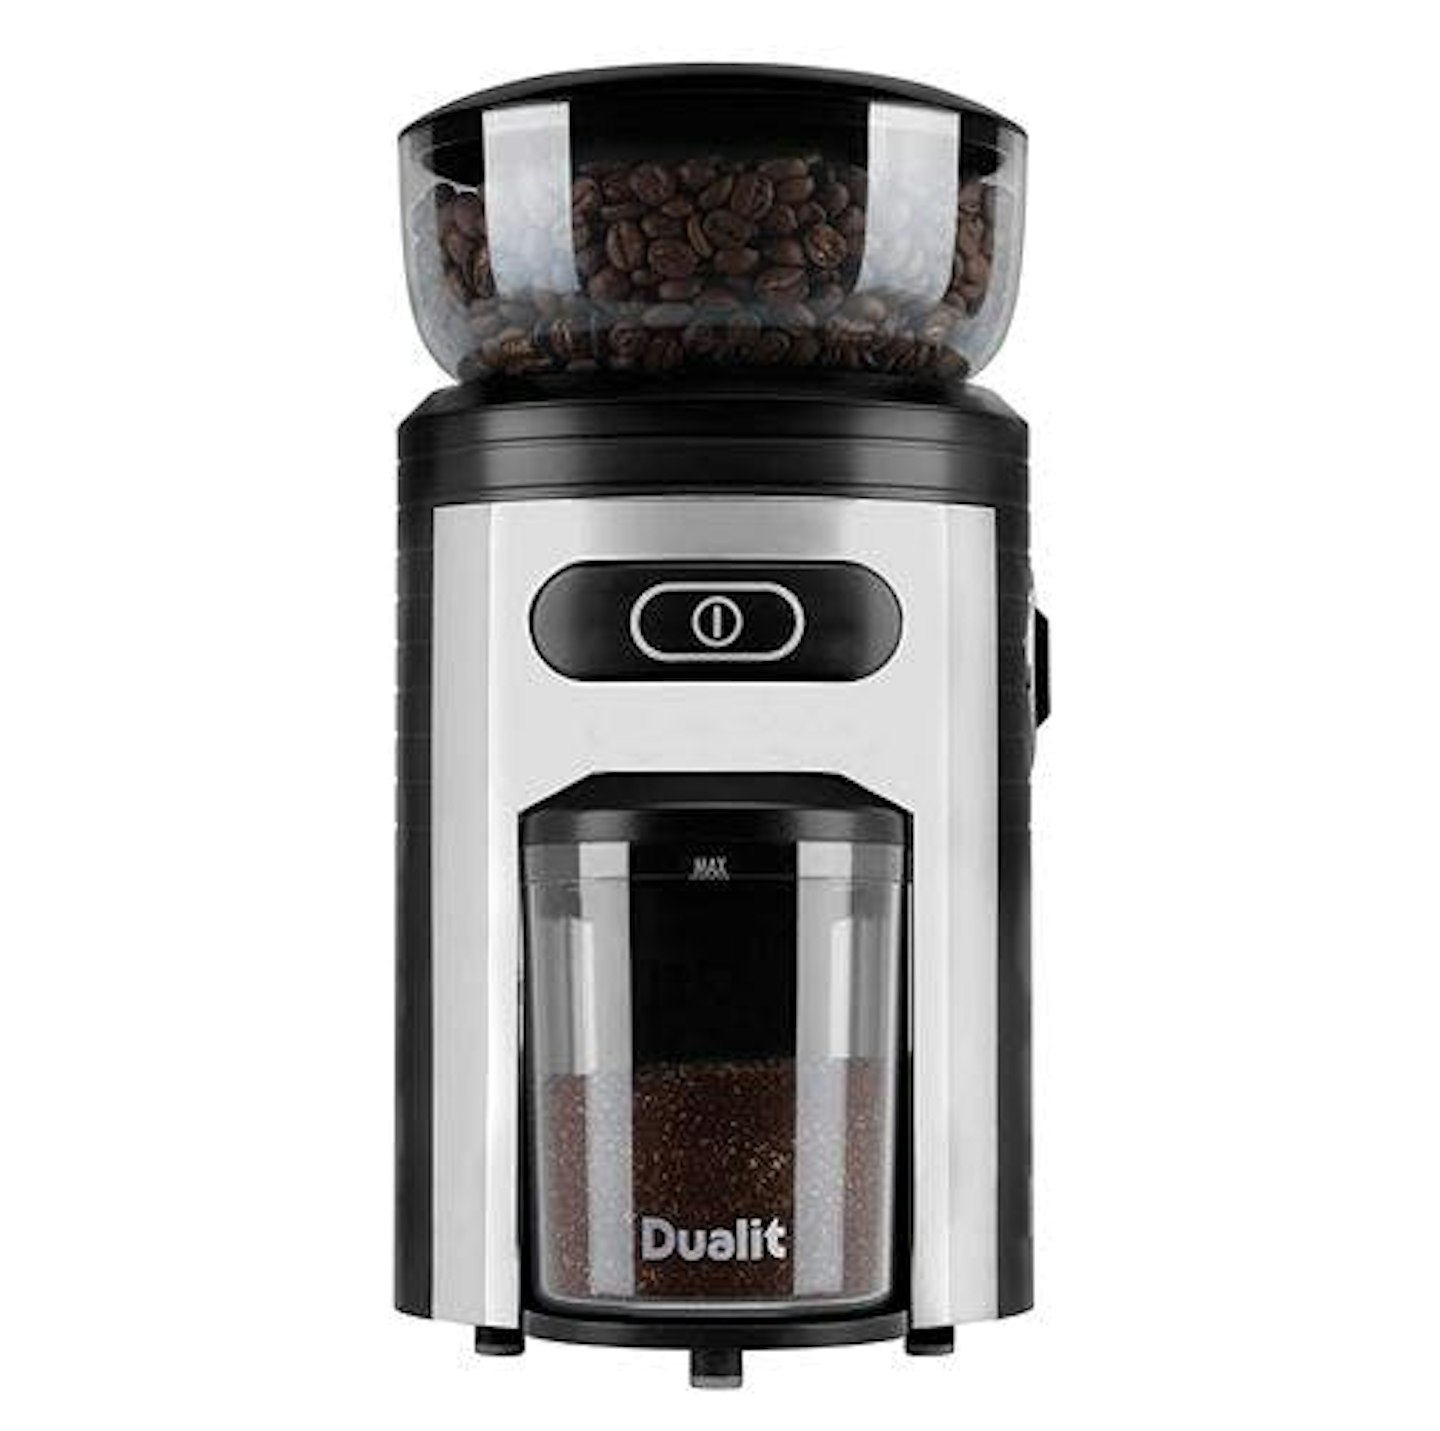 Best coffee grinders: Dualit Burr Coffee Grinder